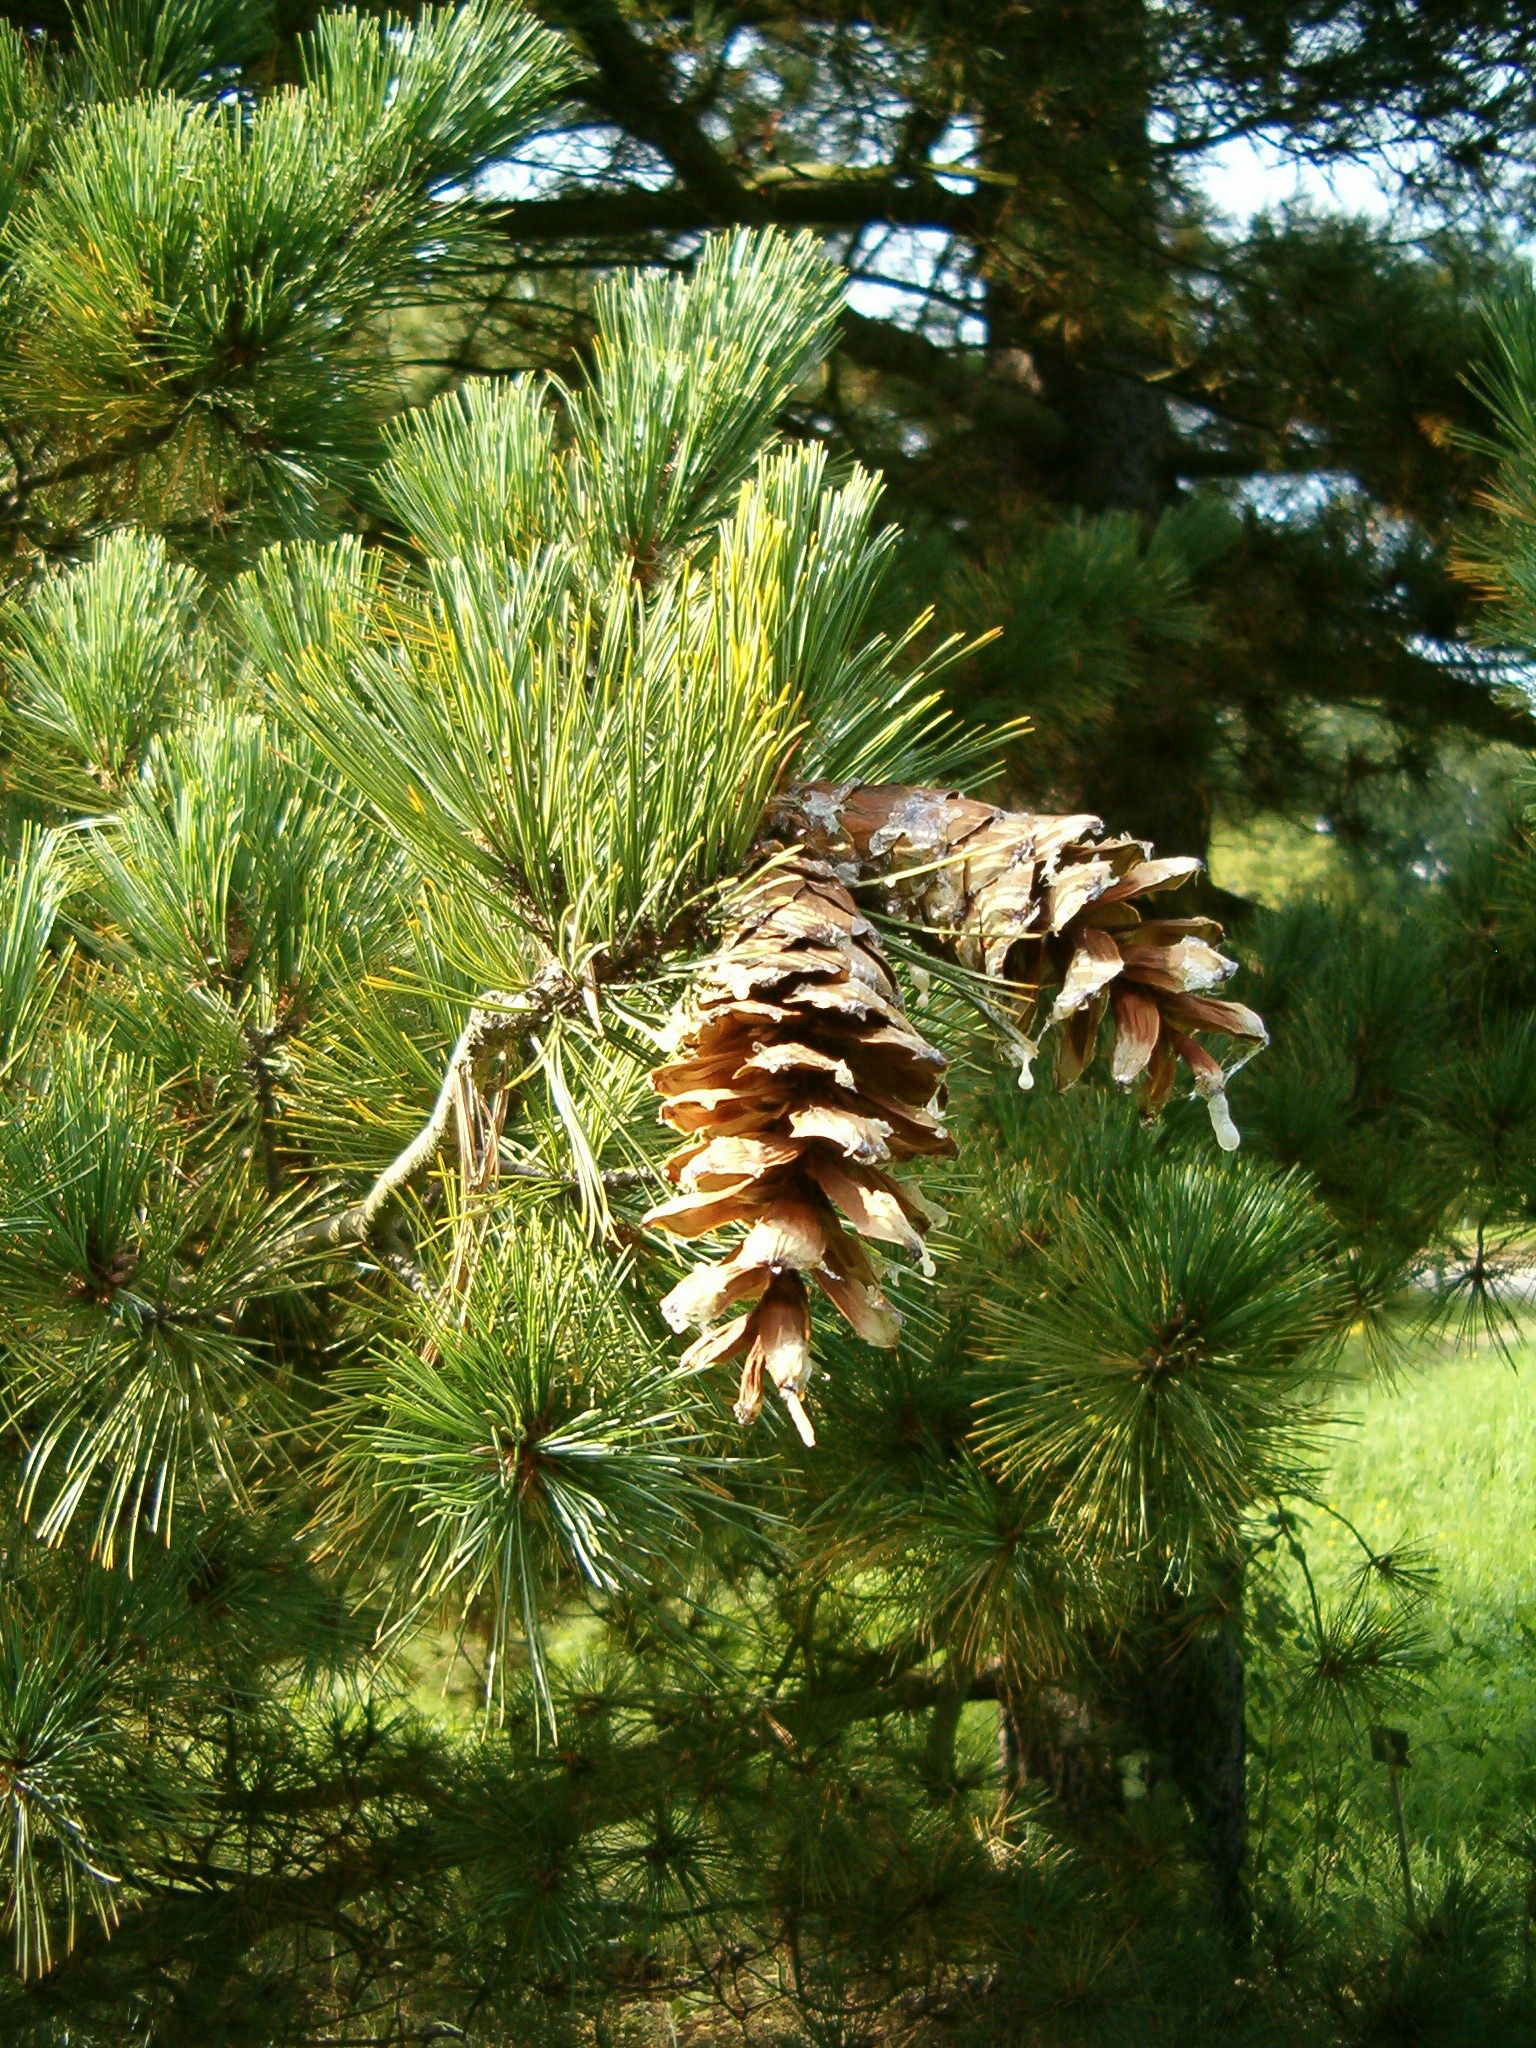 Сосна род хвойных. Сосна Балканская румелийская. Pinus peuce. Сосна Pinus peuce. Сосна румелийская / Македонская / Балканская.